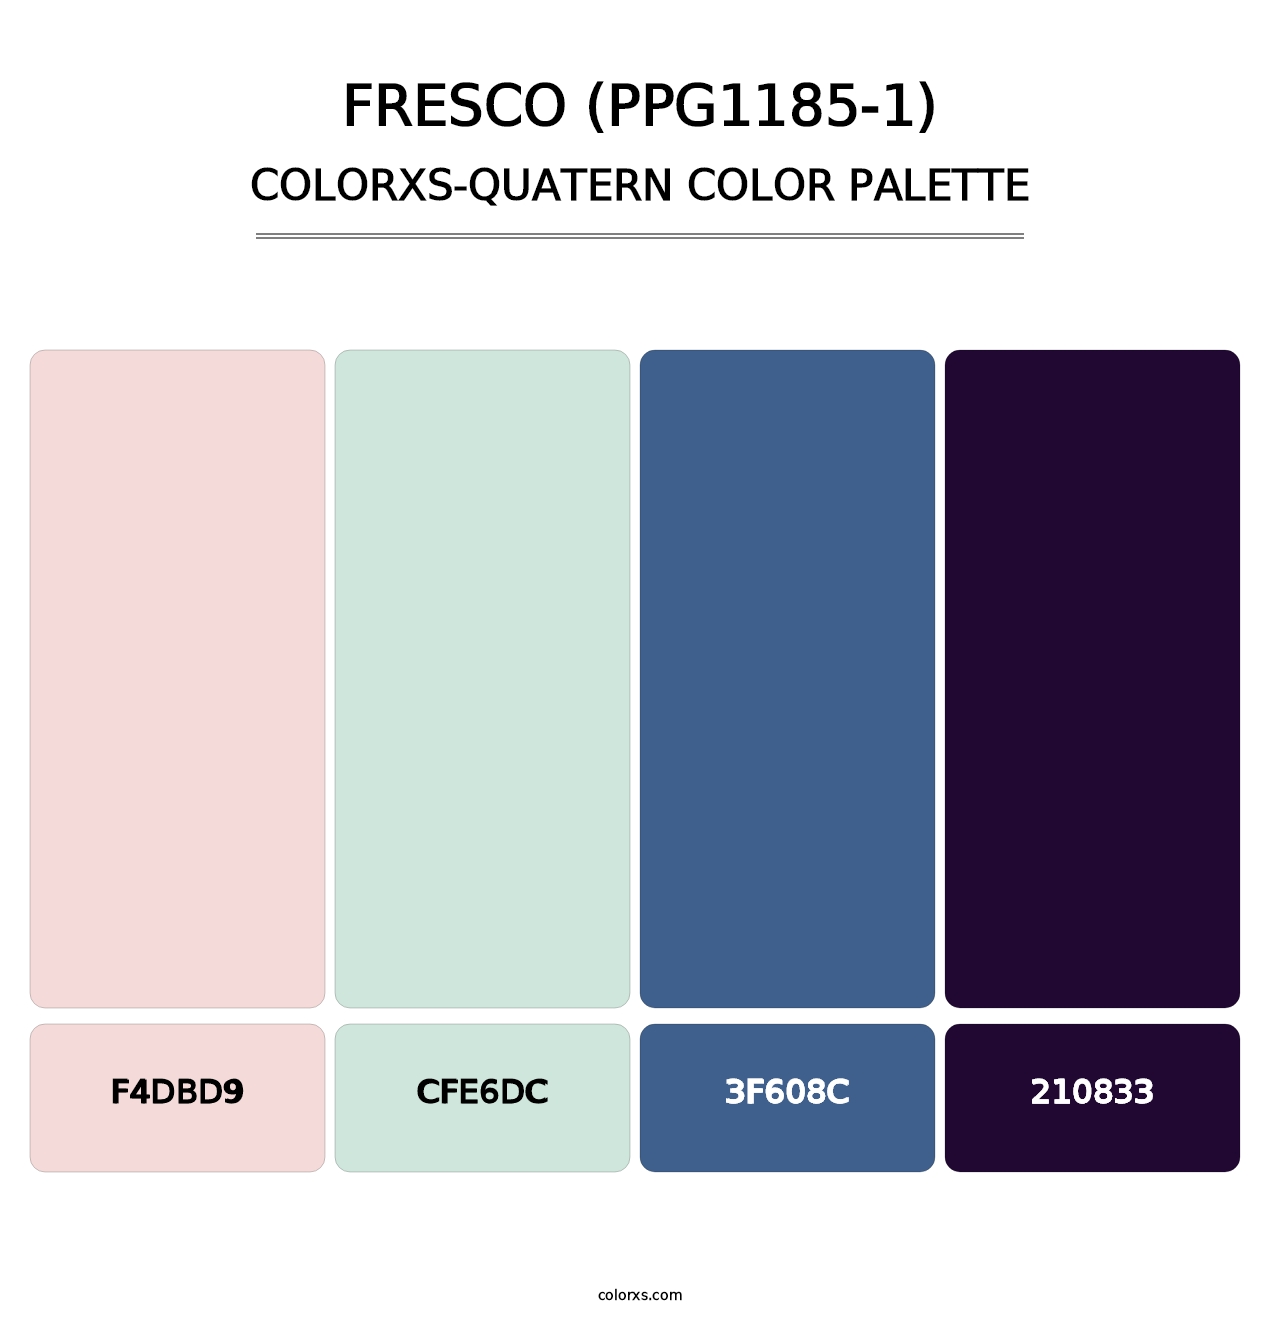 Fresco (PPG1185-1) - Colorxs Quatern Palette